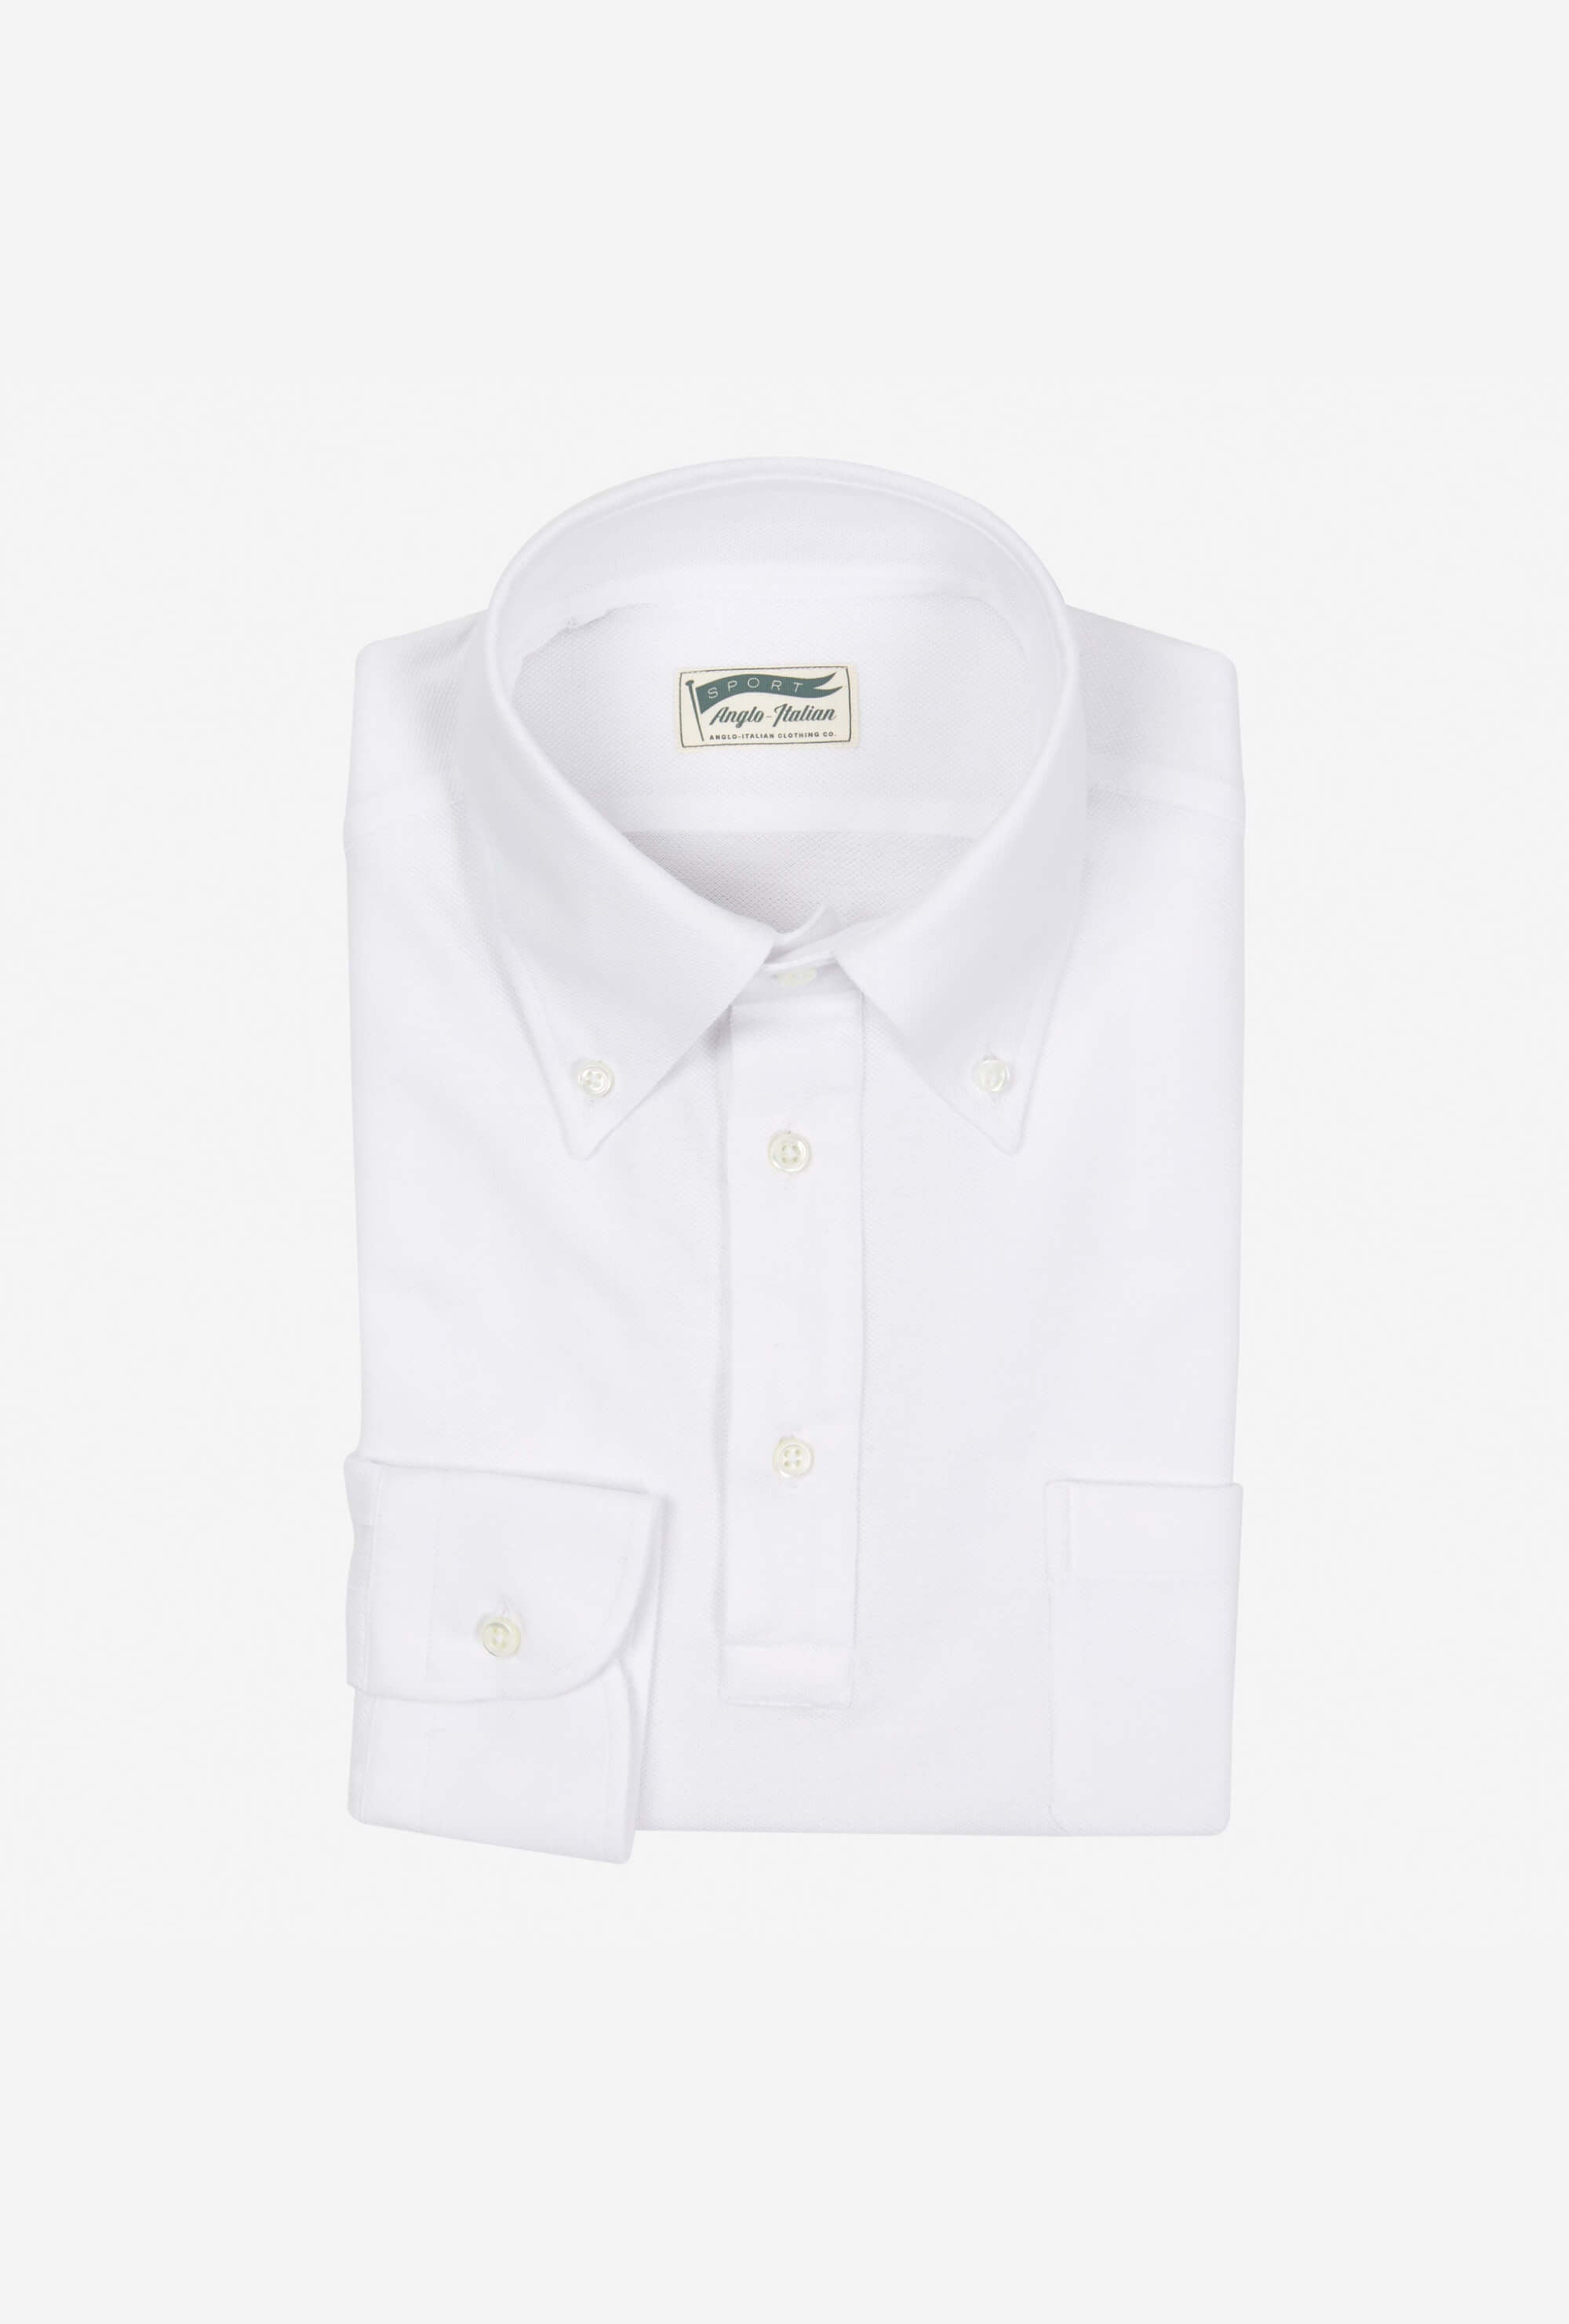 Polo Shirt Long Sleeve White